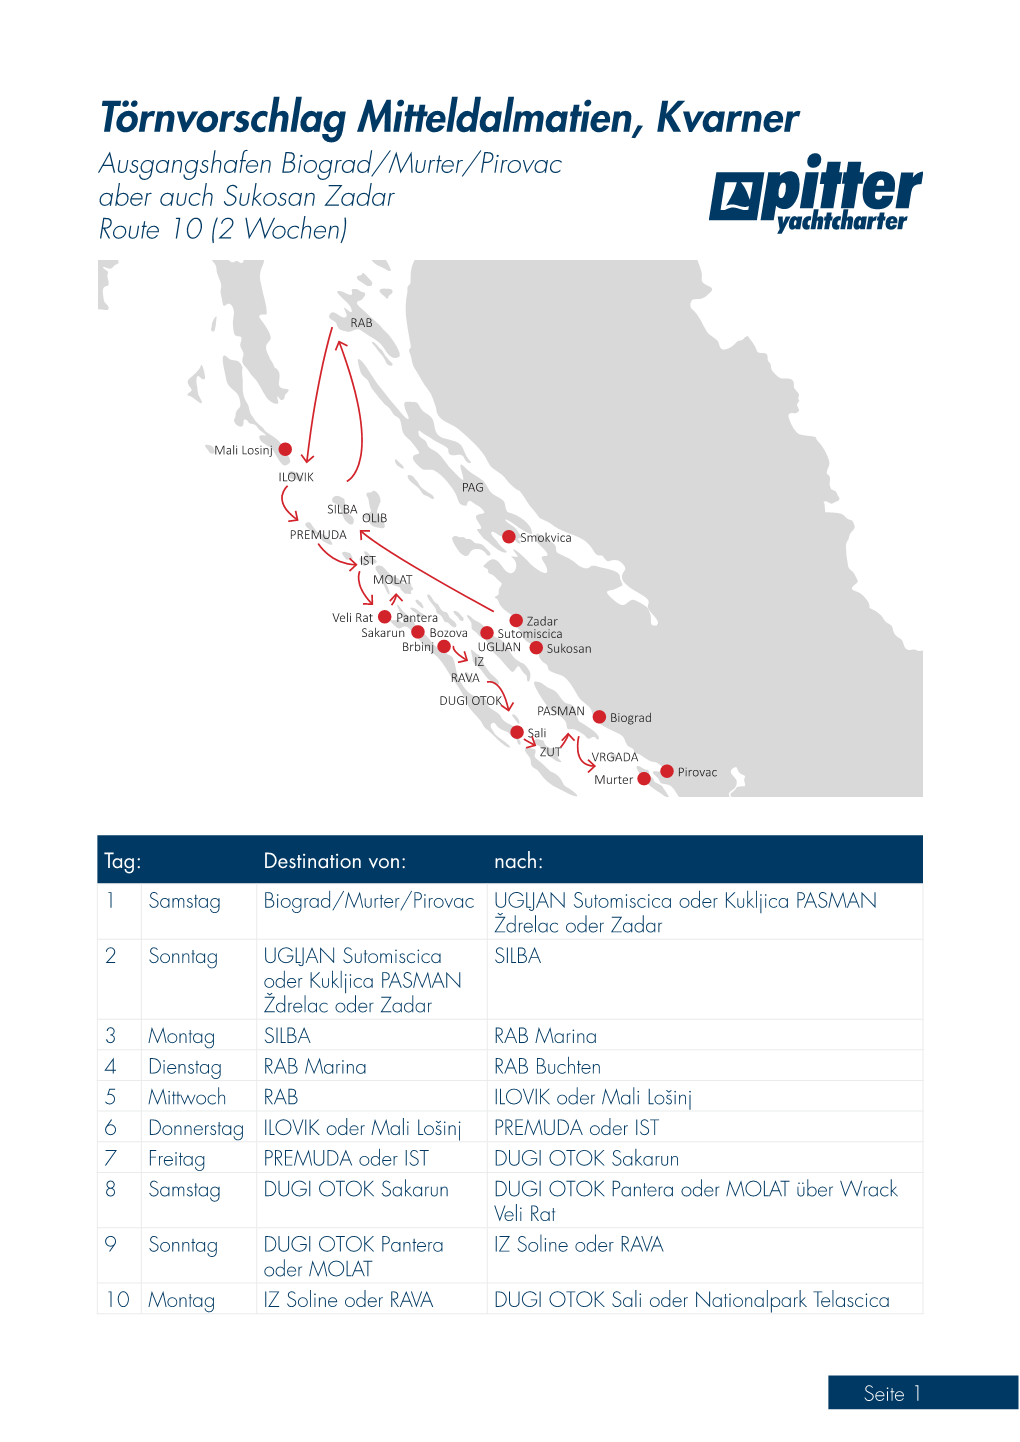 Törnvorschlag Mitteldalmatien, Kvarner Ausgangshafen Biograd/Murter/Pirovac Aber Auch Sukosan Zadar Route 10 (2 Wochen)